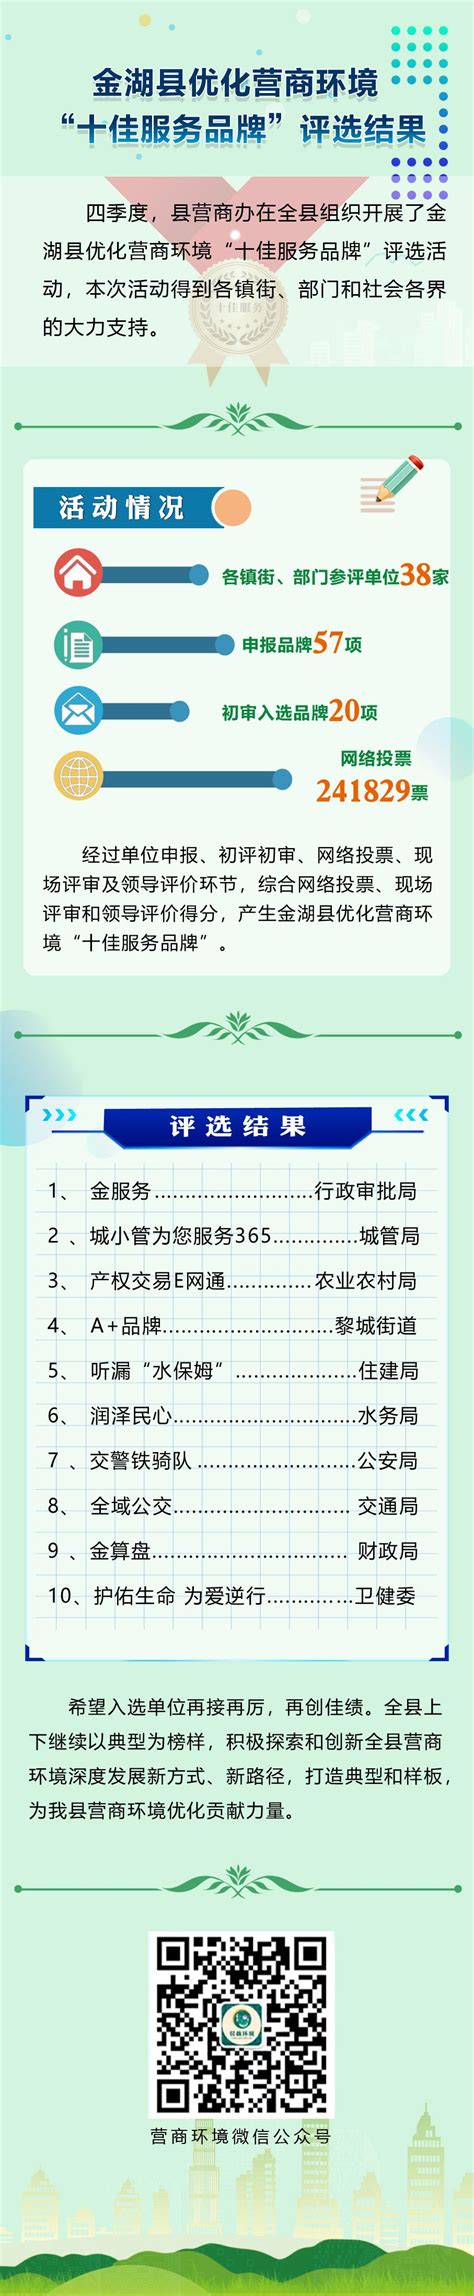 金湖县优化营商环境“十佳服务品牌”评选活动结果通报